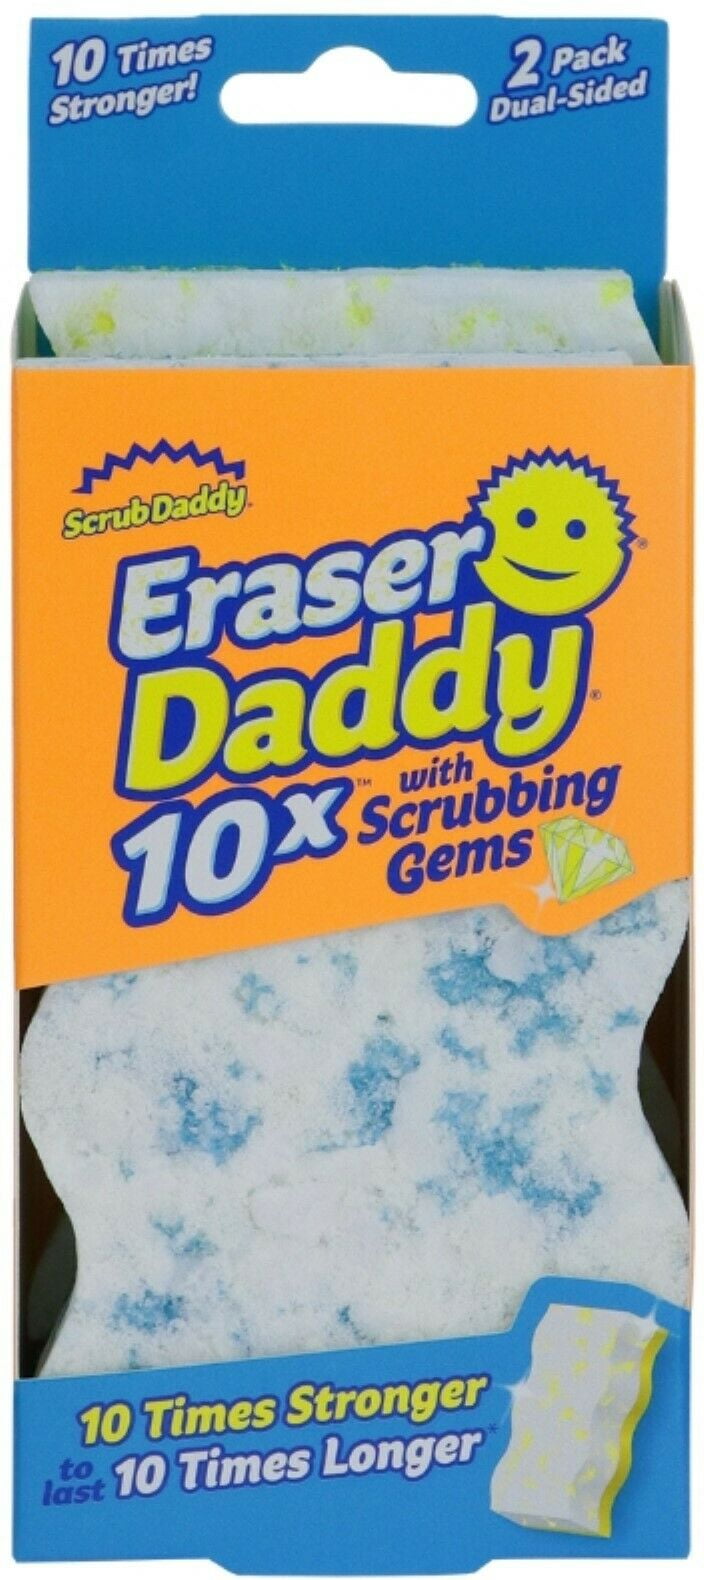 Eraser Daddy 10x 2ct